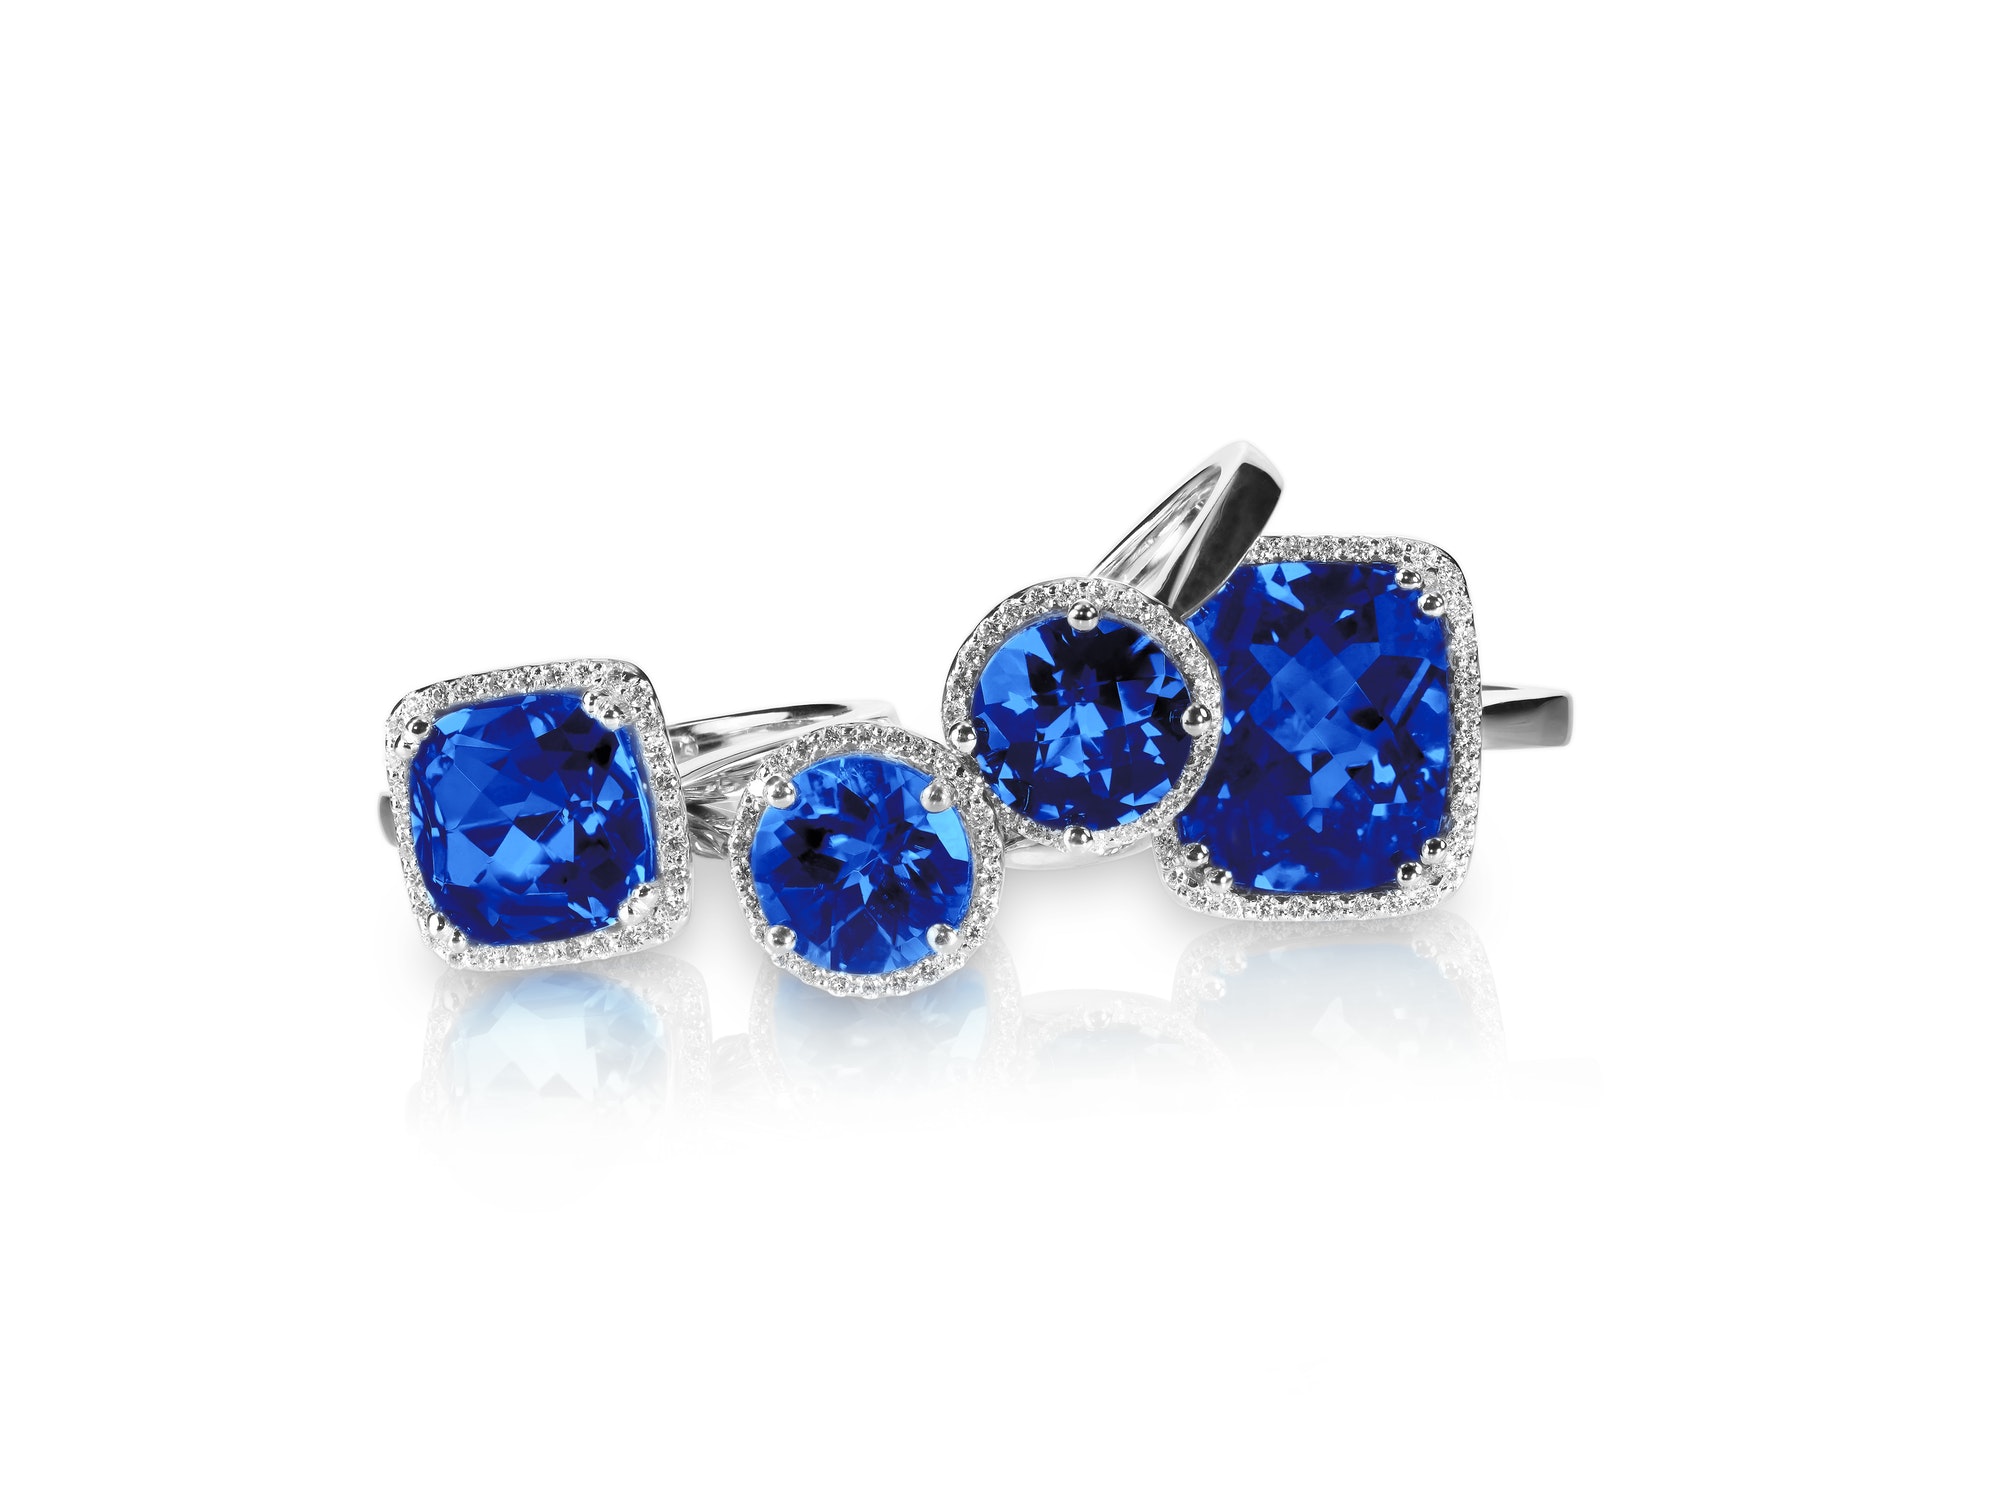 set-of-rings-gemstone-fine-jewelry-group-stack-or-cluster-of-multiple-gemstone-diamond-rings-.jpg